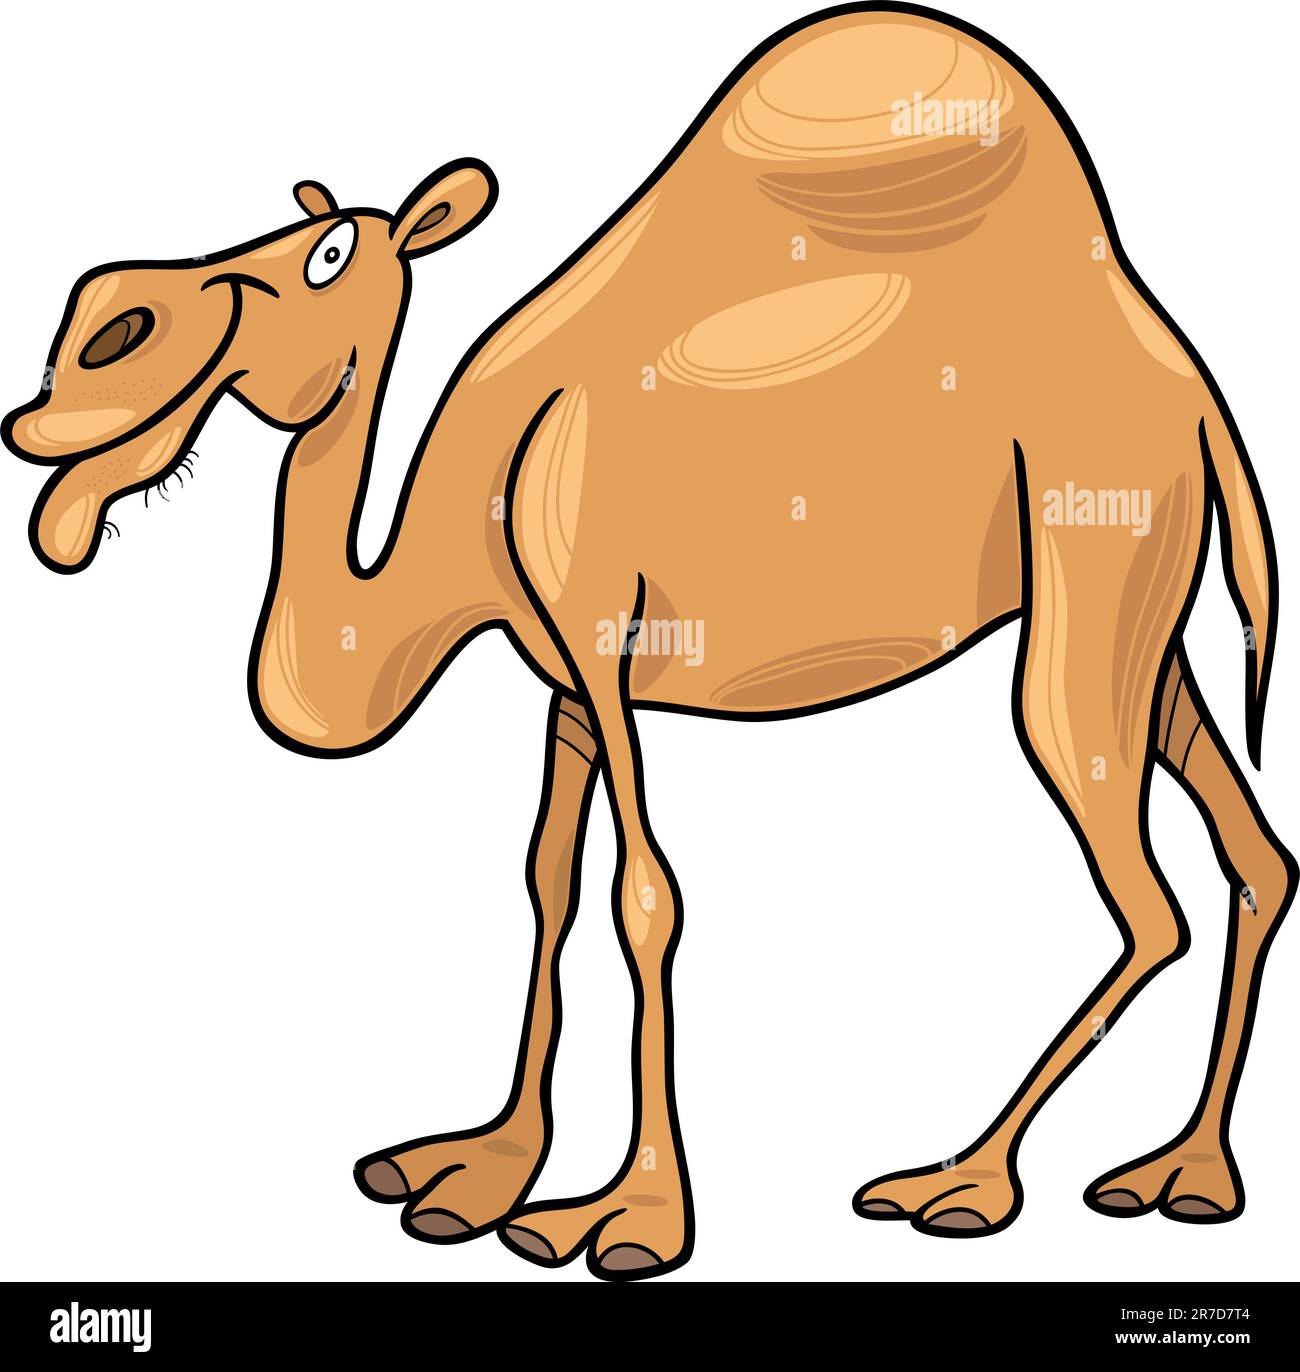 cartoon illustration of dromedary camel Stock Vector